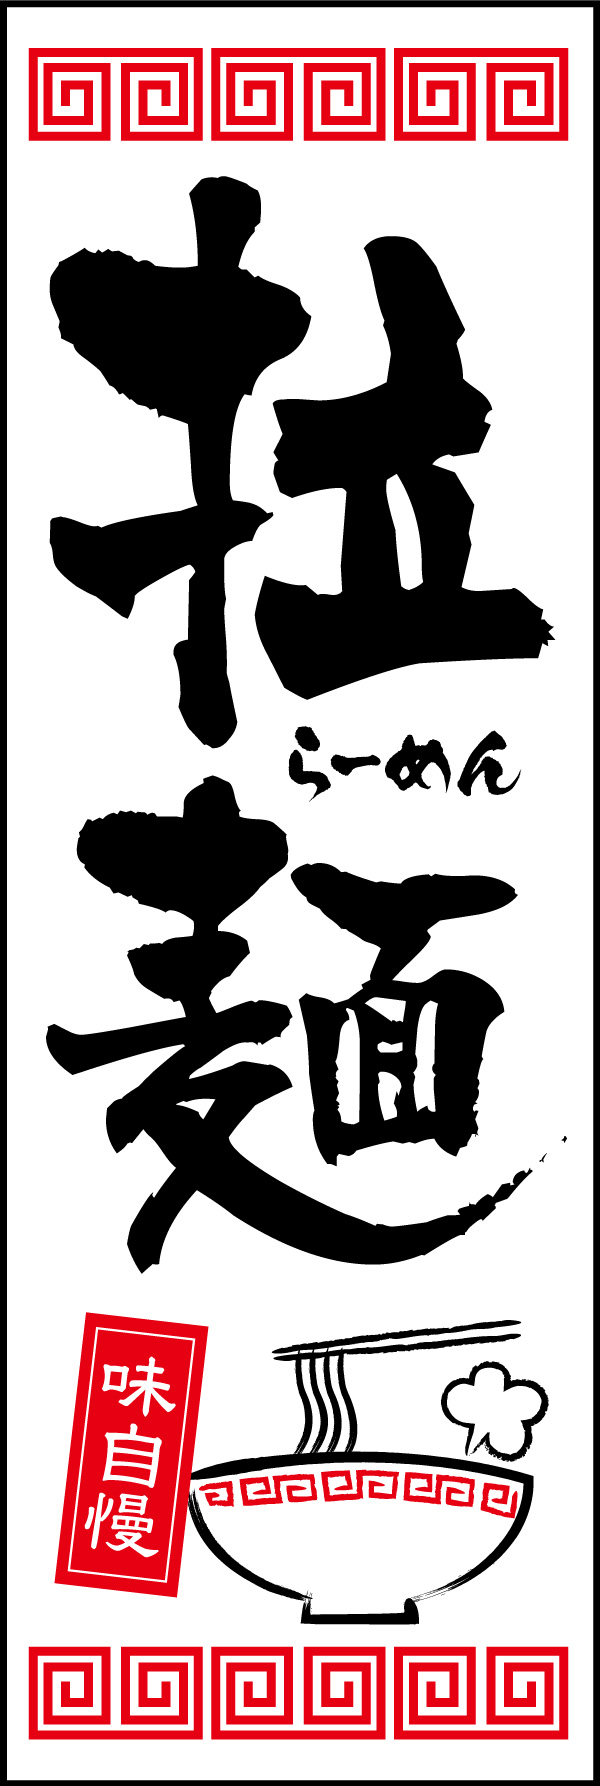 拉麺 07 「拉麺」ののぼりです。漢字で「拉麺」表現、本格さをアピール。イラストにも注目して下さい！(Y.M)